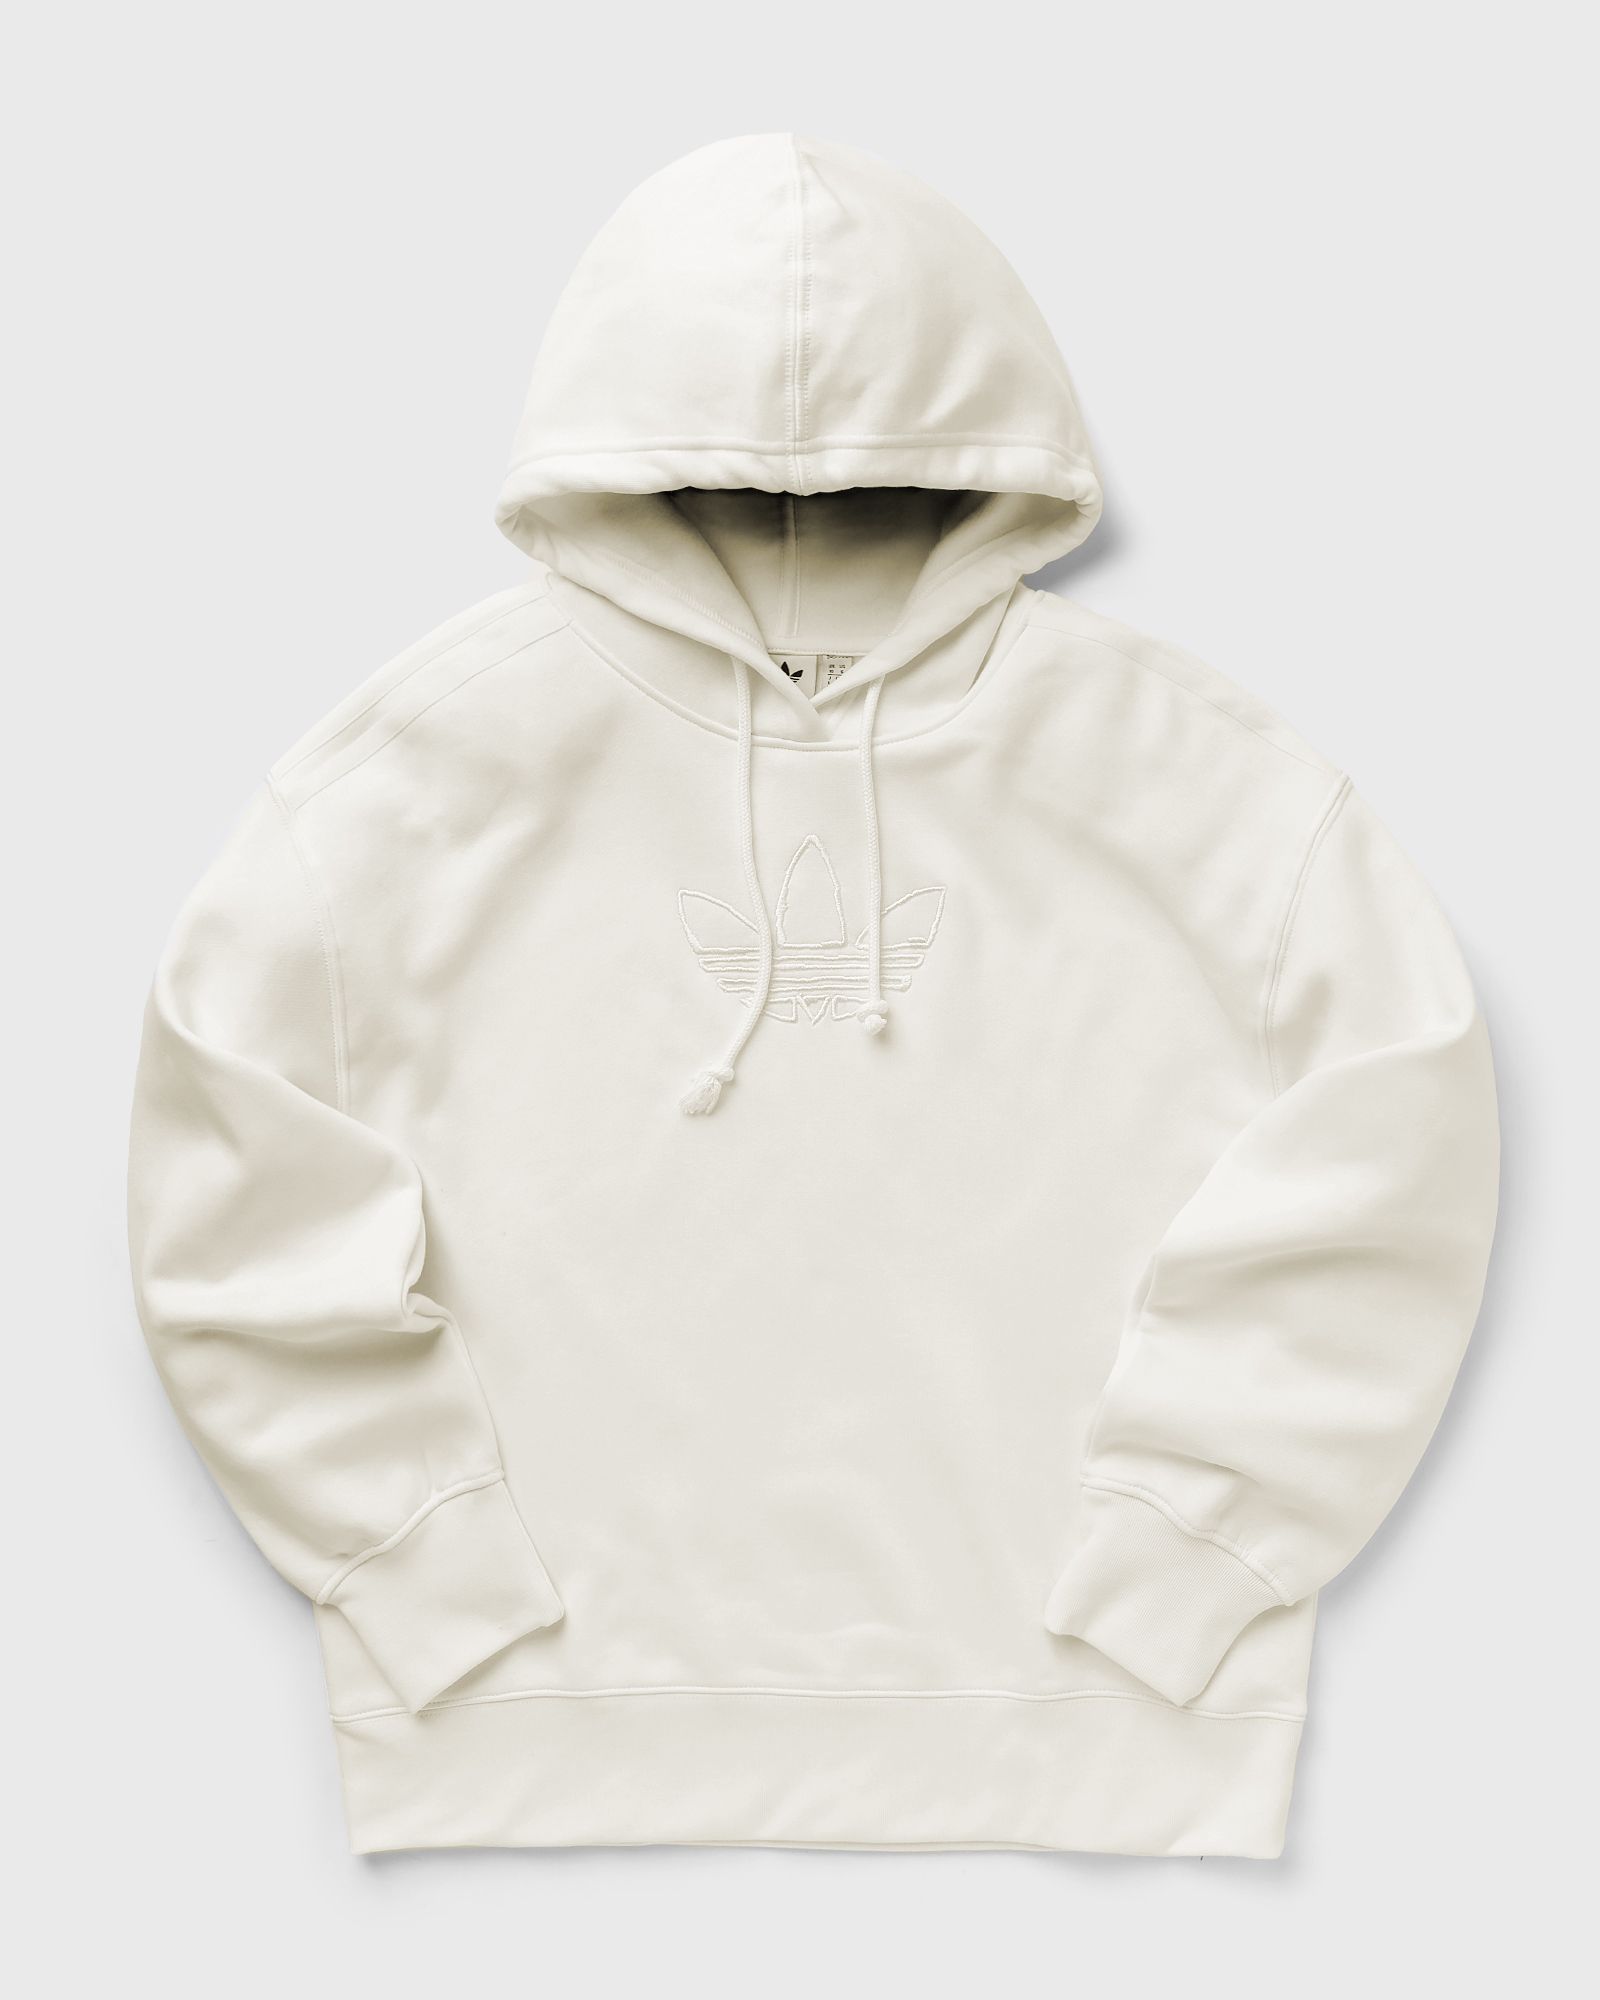 Adidas - graphic hoodie women hoodies white in größe:m